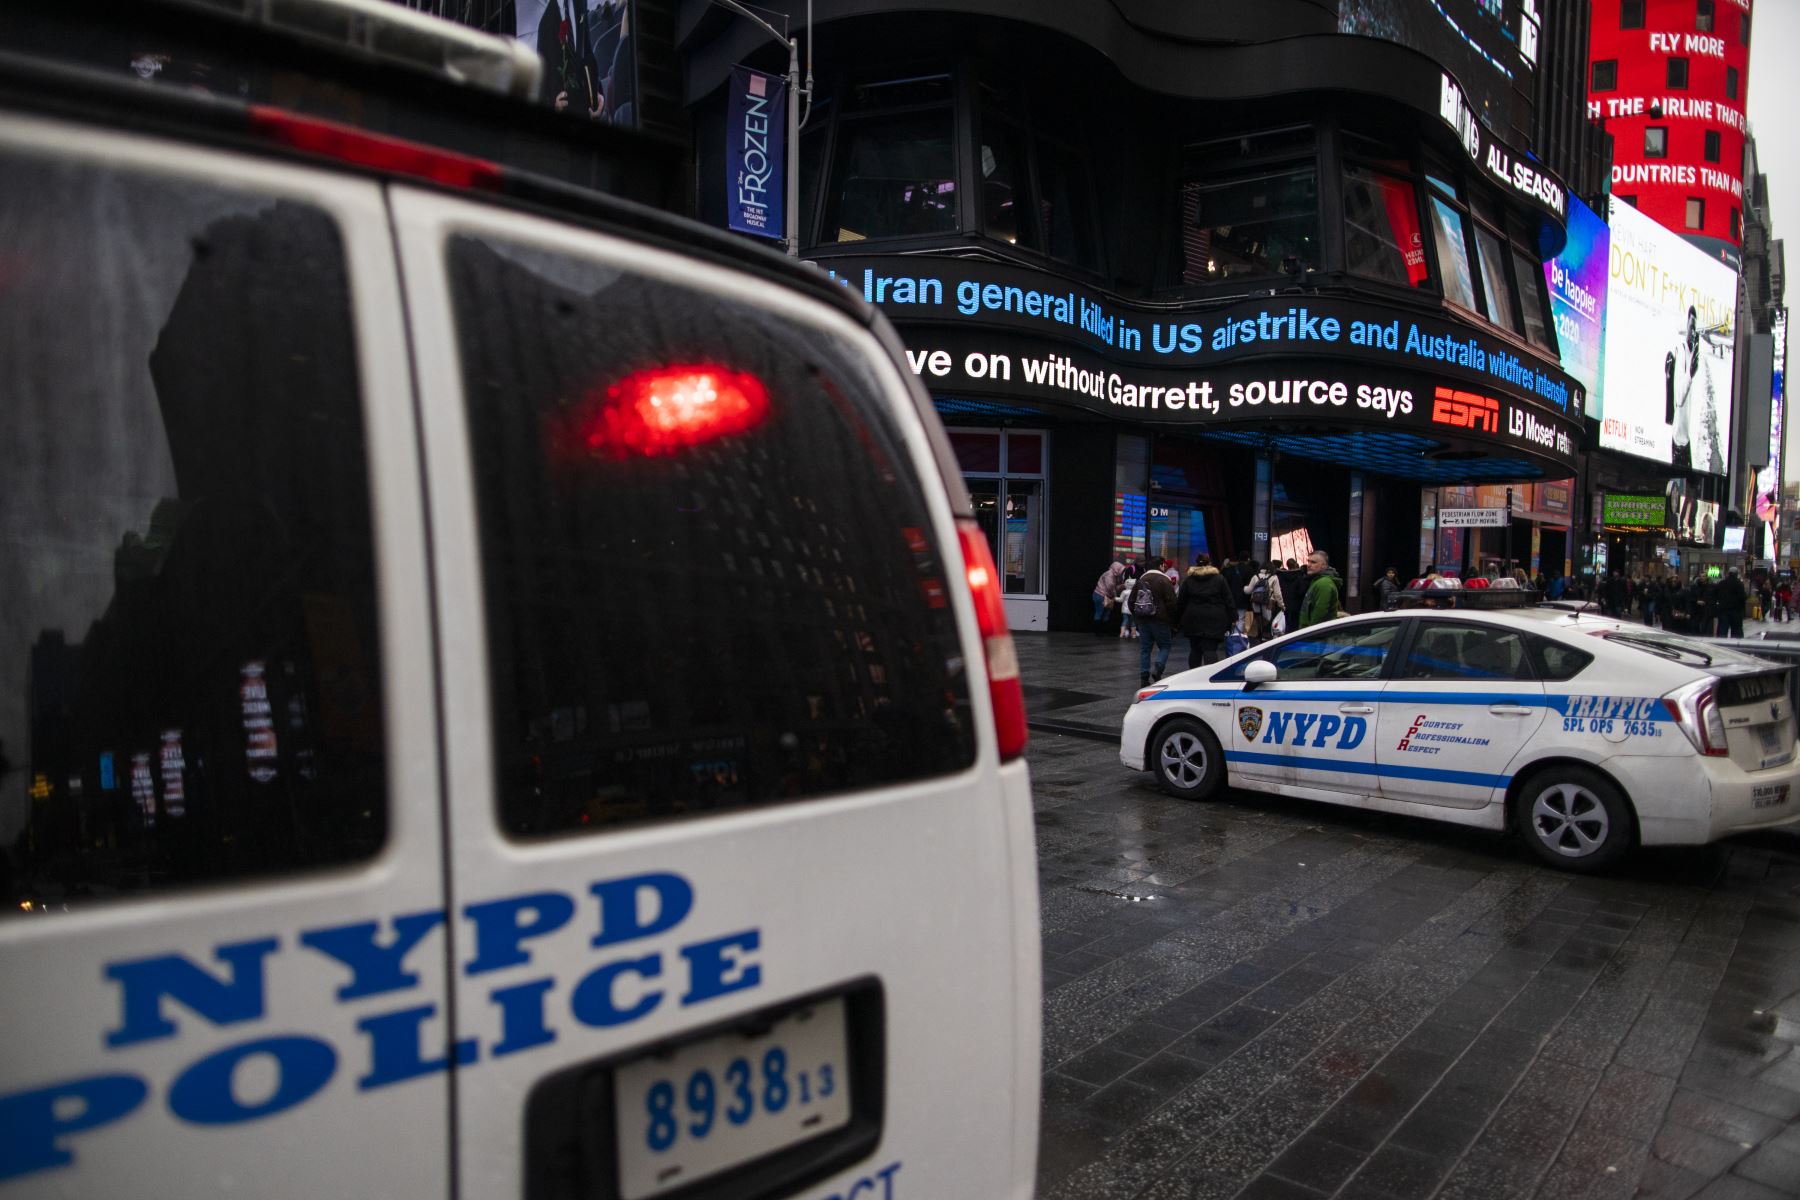 El Times Square luce con una cantidad inusual de policías y militares. AFP